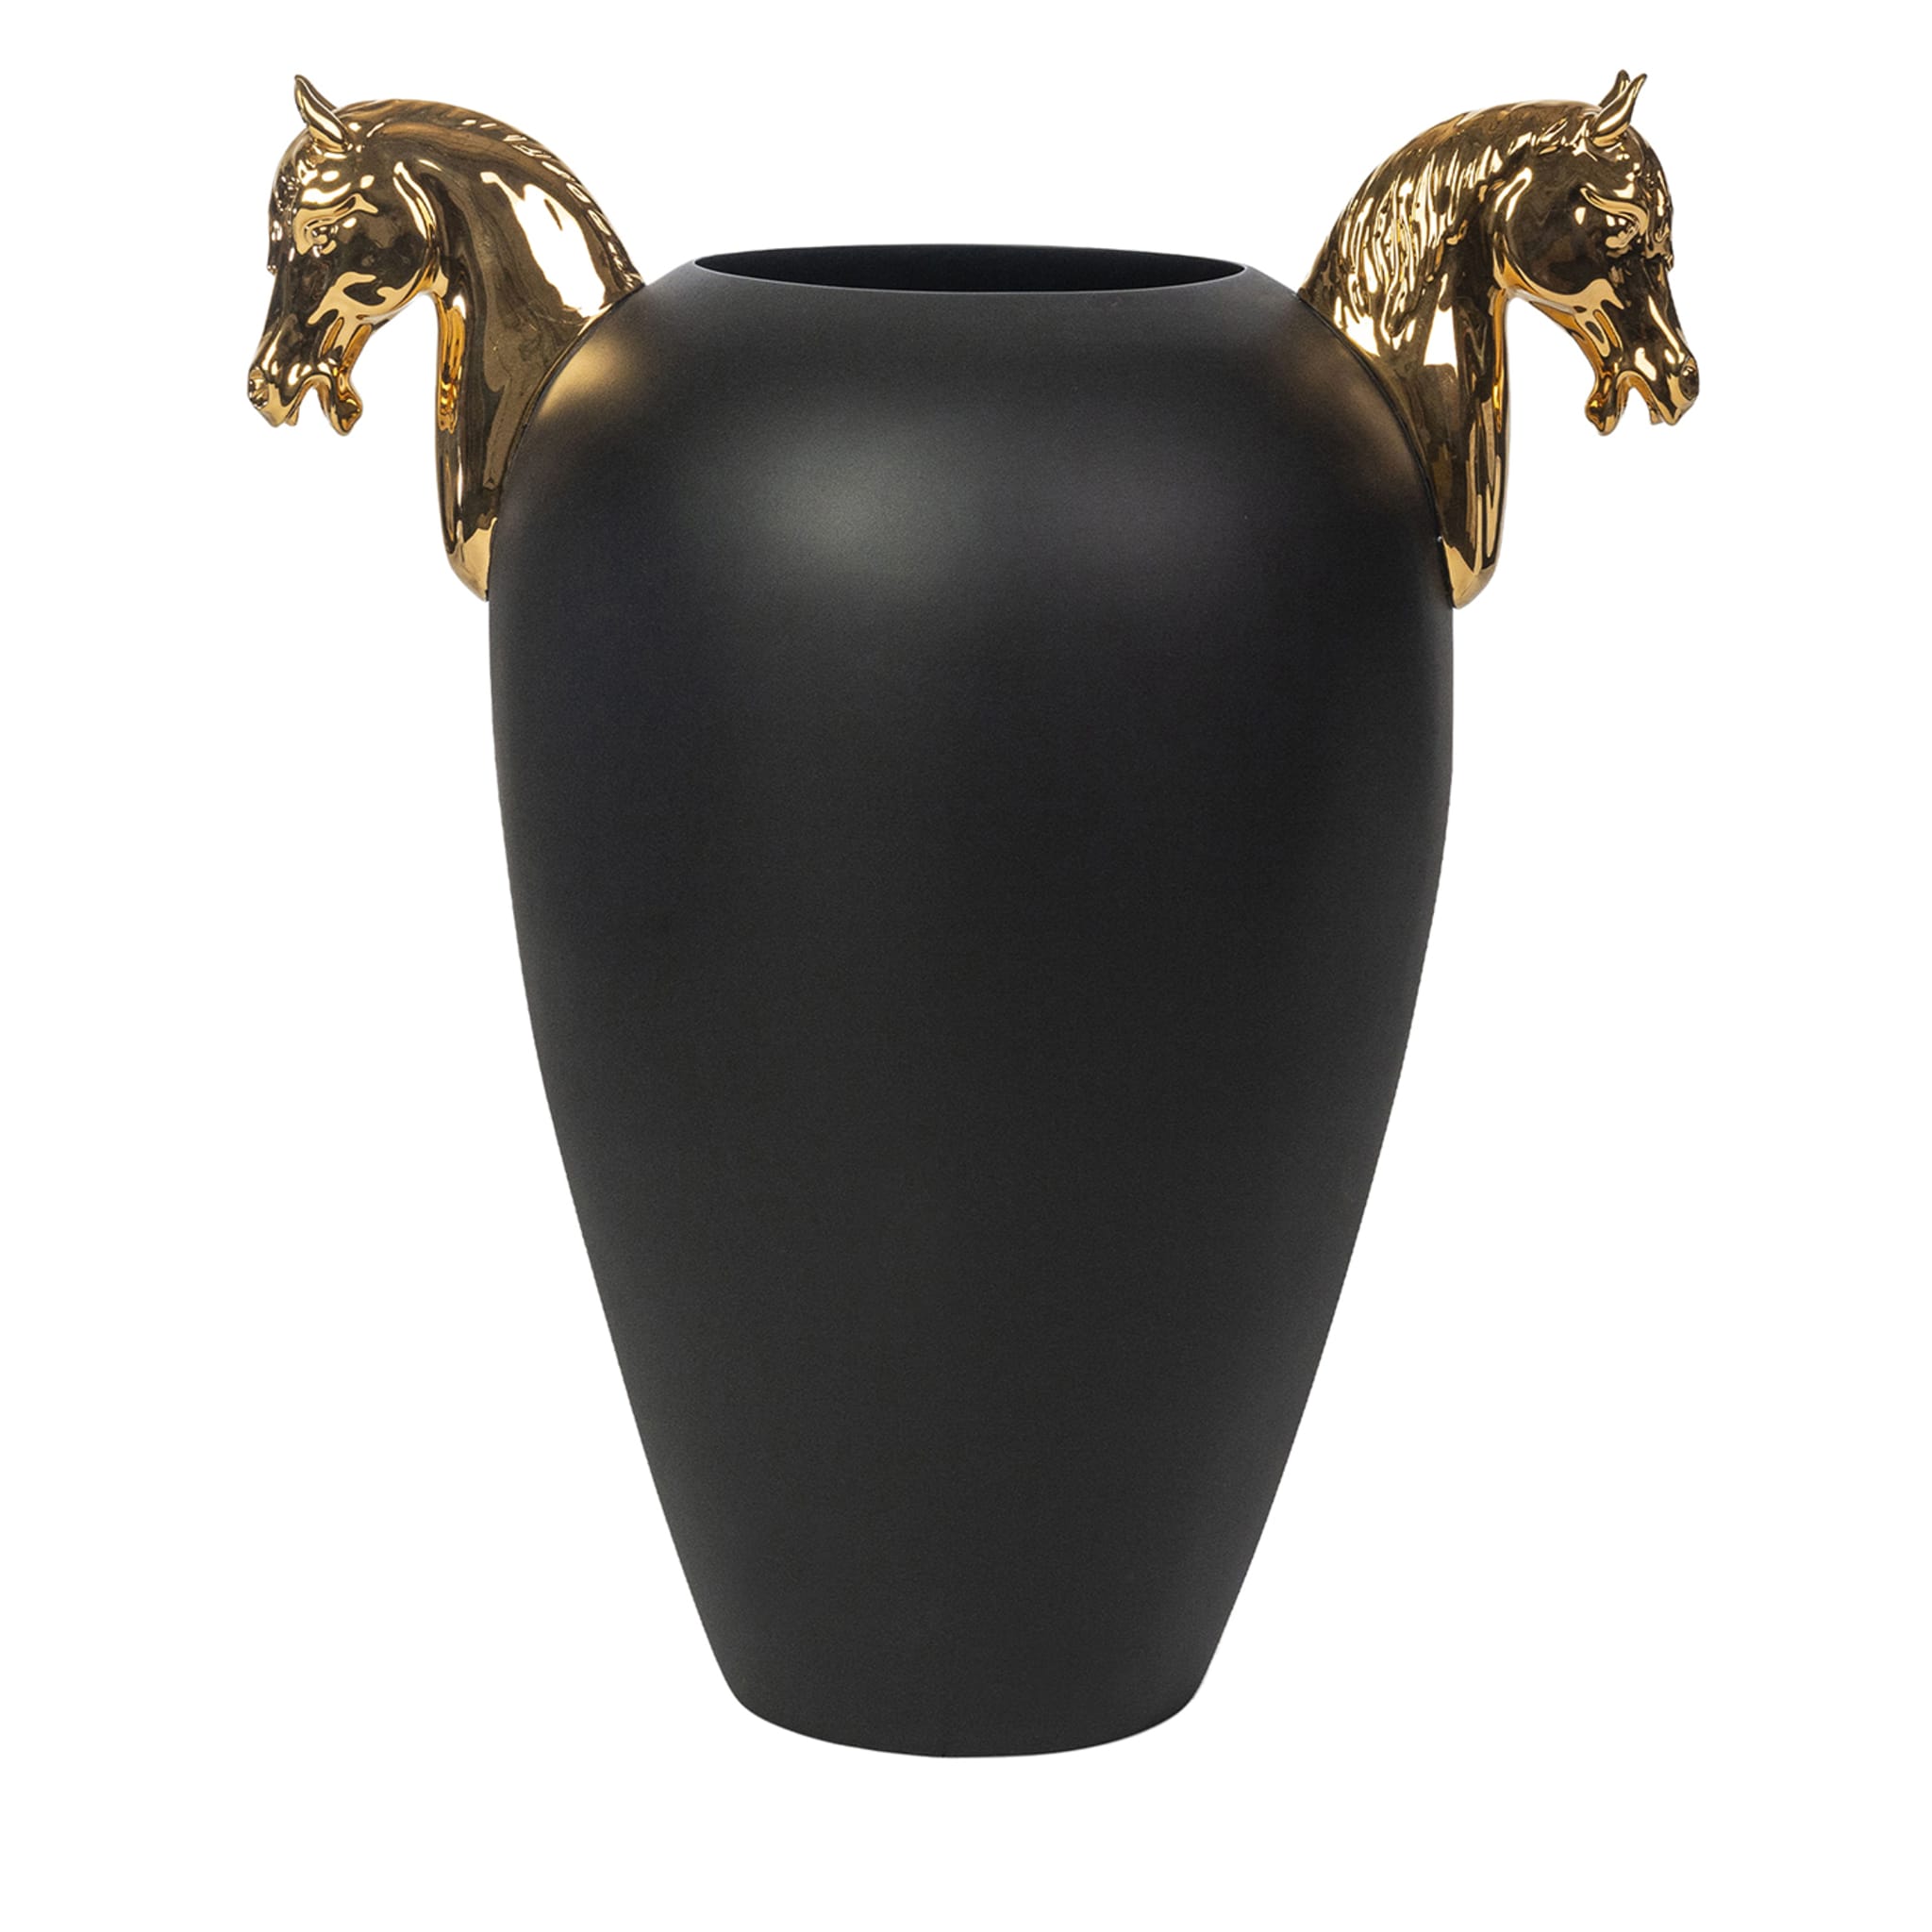 Grand vase noir et or brillant en forme de cheval - Vue principale